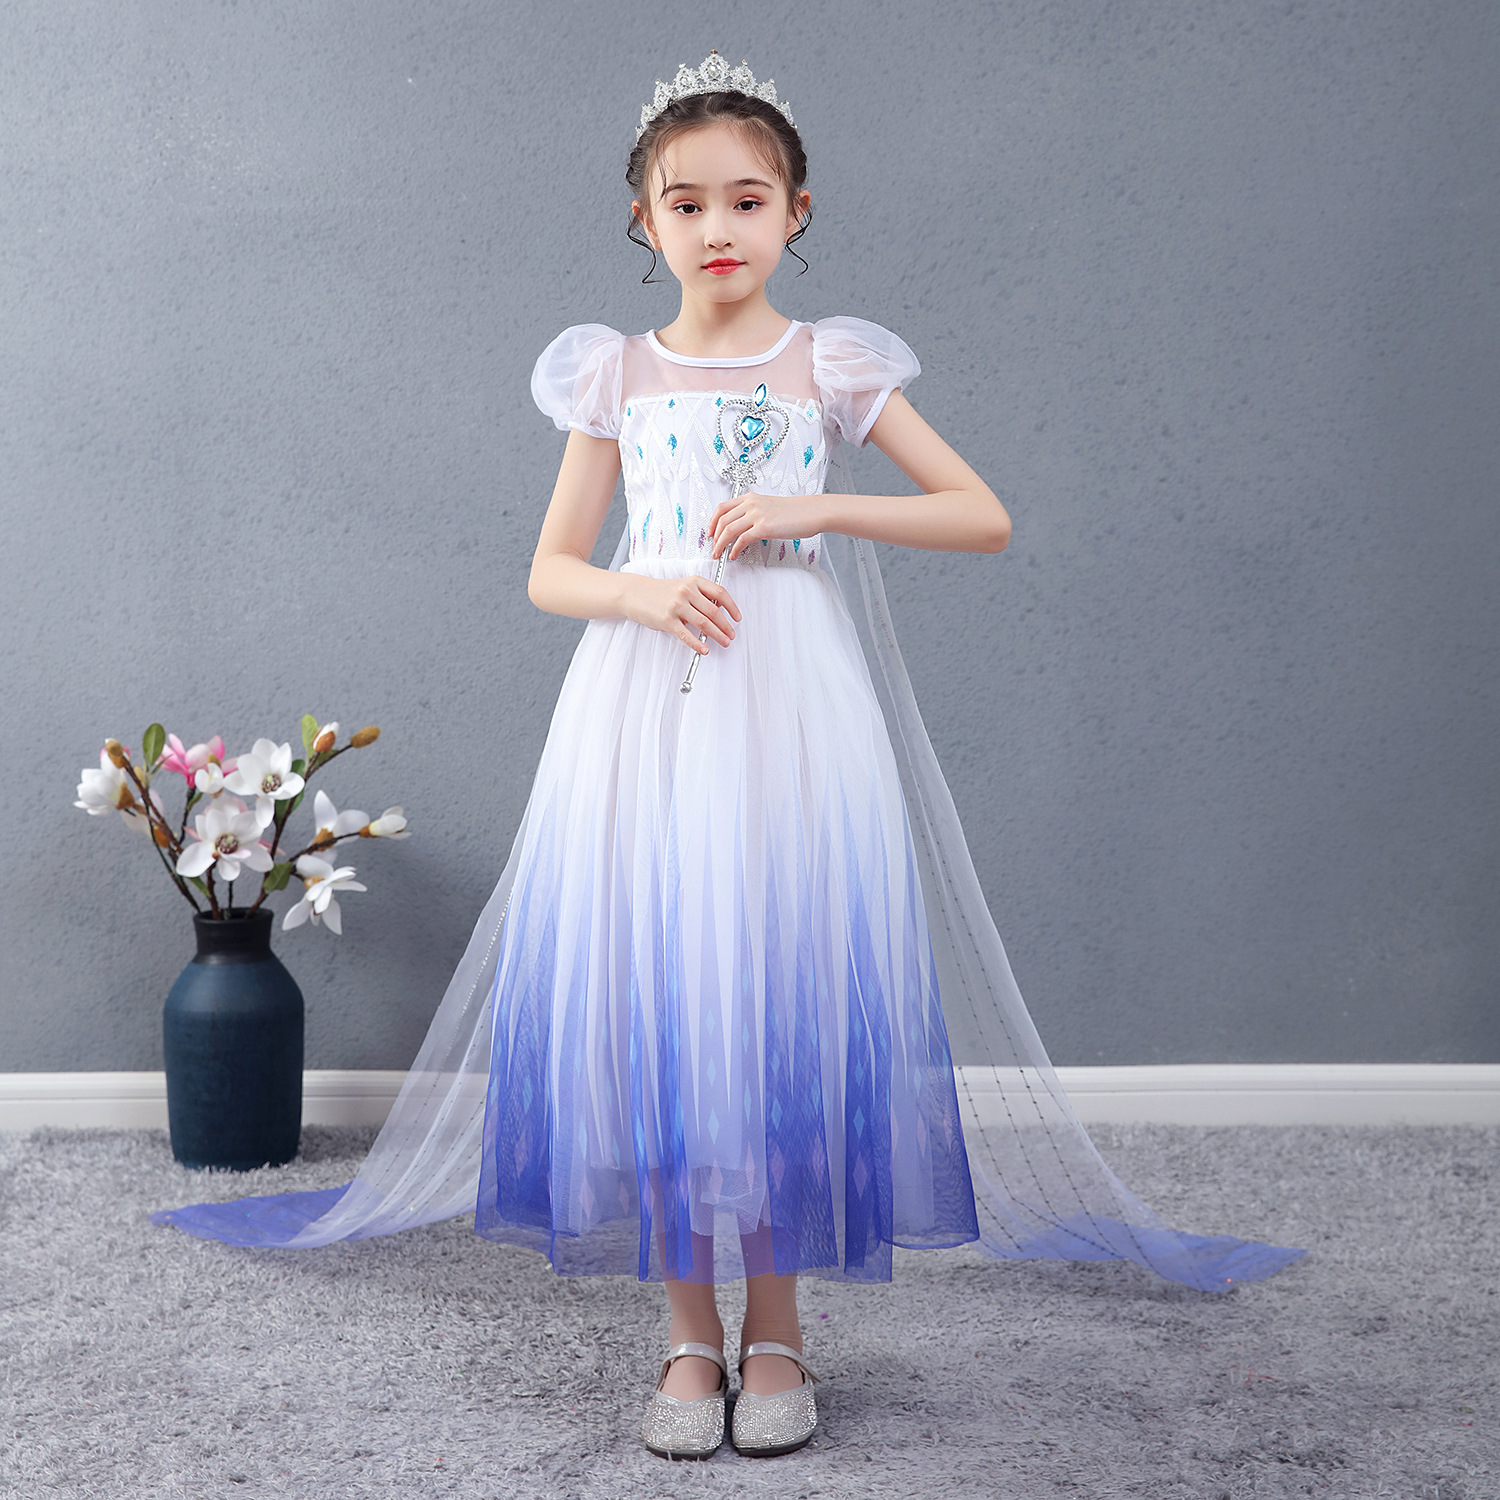 Váy đầm công chúa bé gái 1 10 12 tuổi giá rẻ hơn tại CubiMart